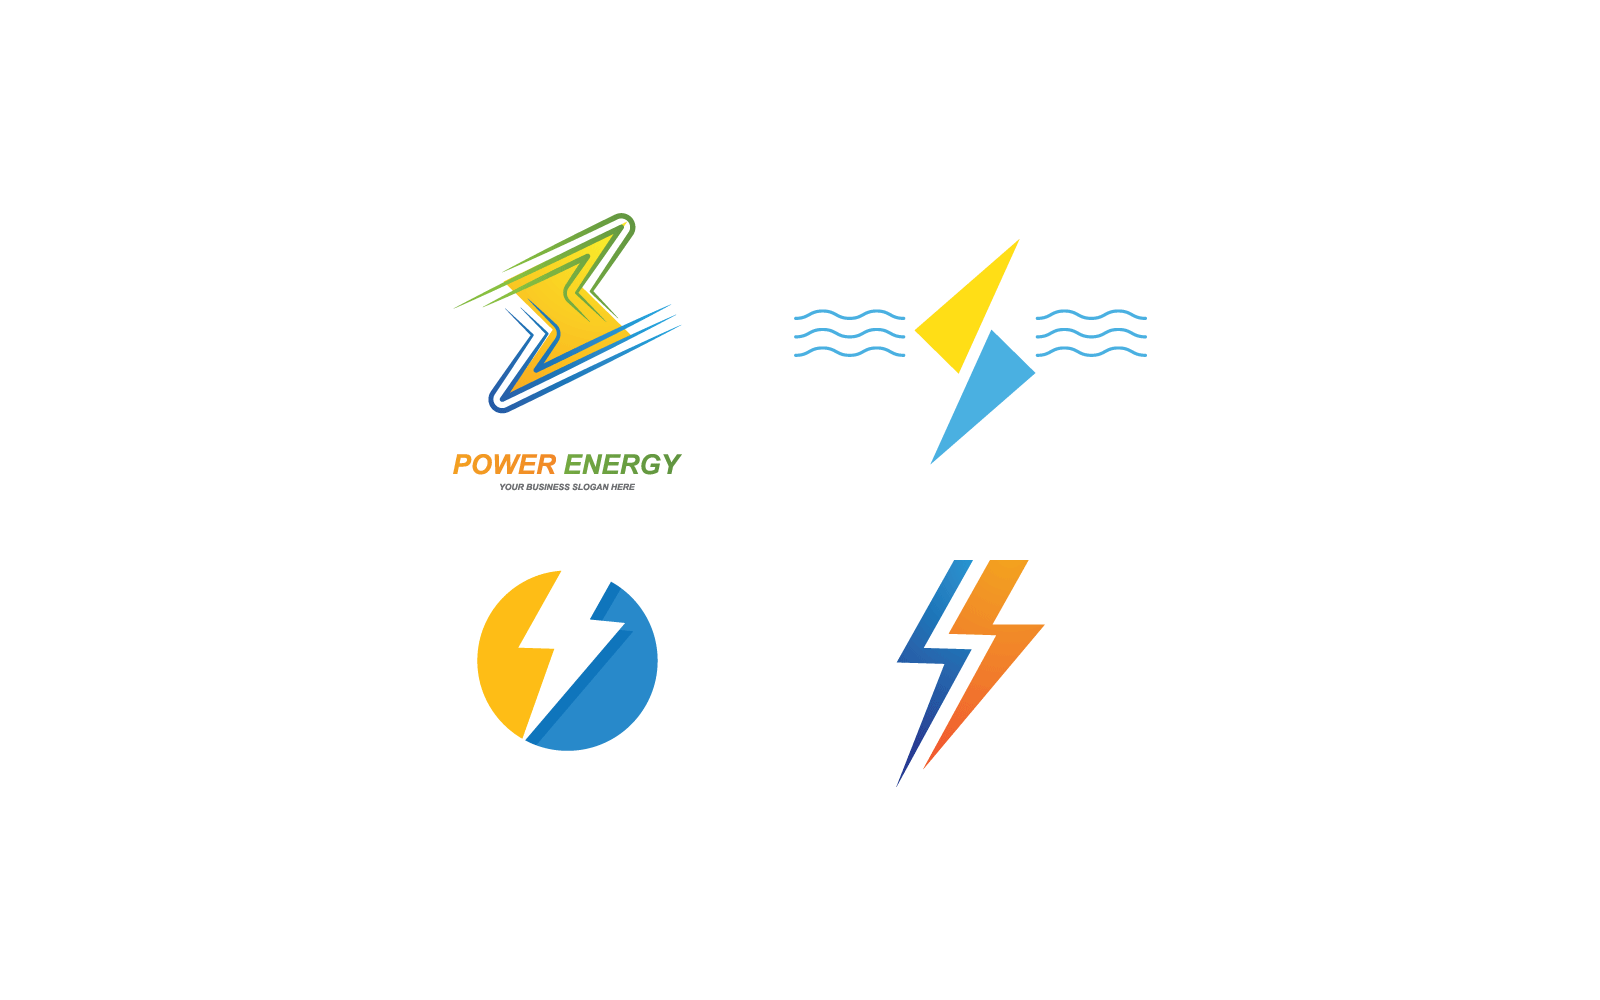 Power lightning power energy logo flat design vector